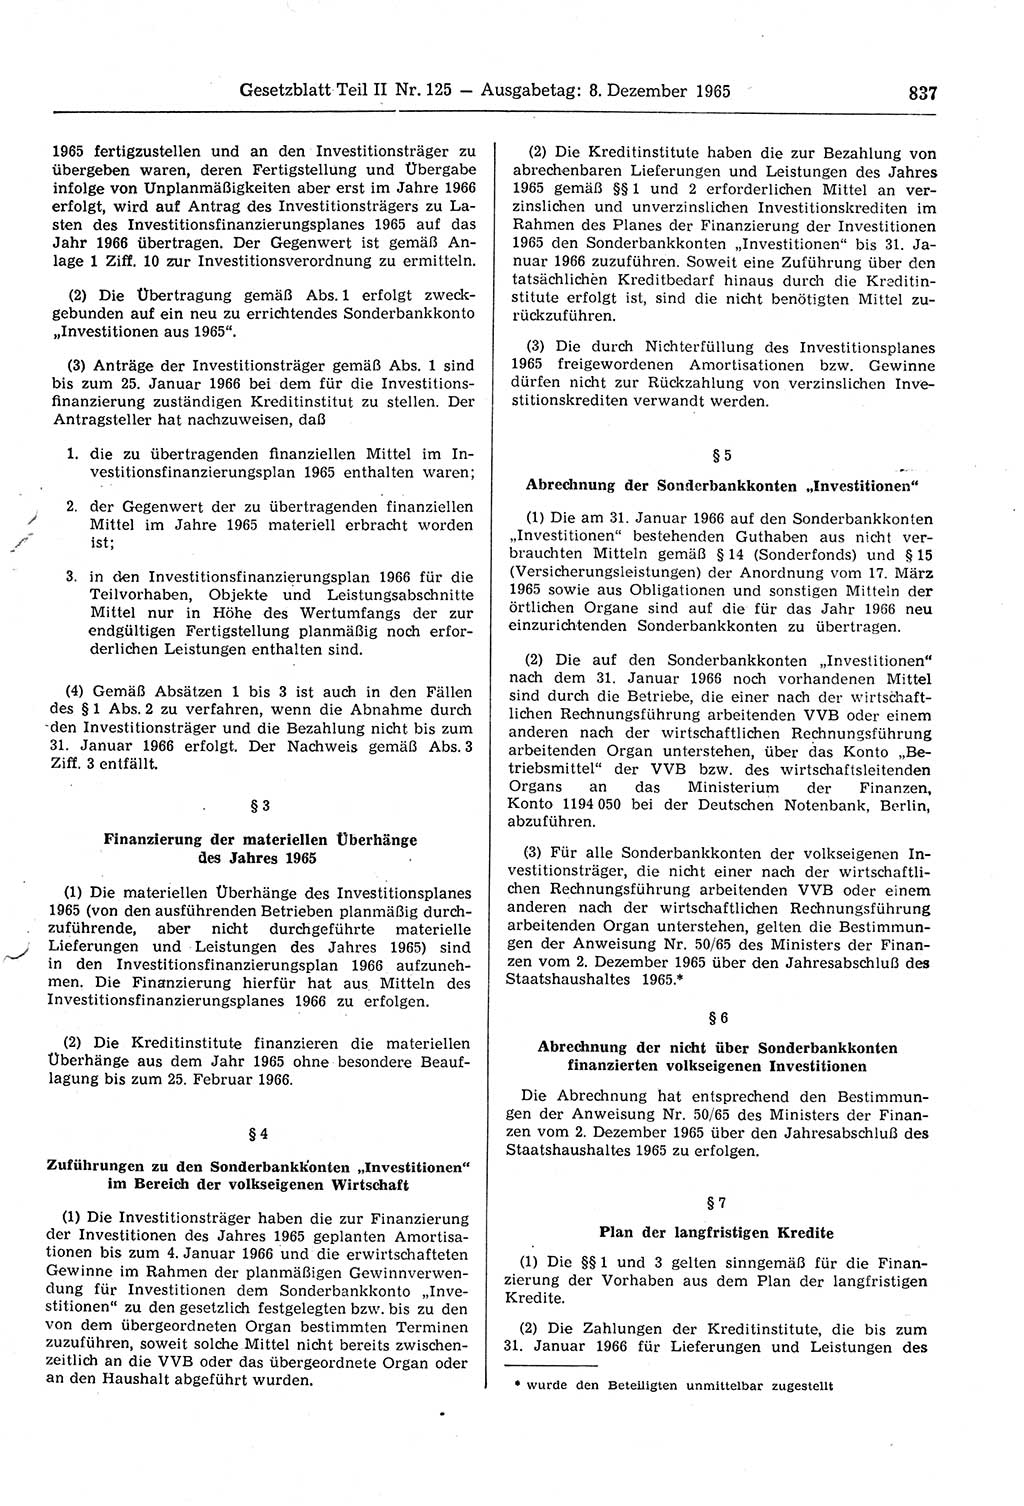 Gesetzblatt (GBl.) der Deutschen Demokratischen Republik (DDR) Teil ⅠⅠ 1965, Seite 837 (GBl. DDR ⅠⅠ 1965, S. 837)